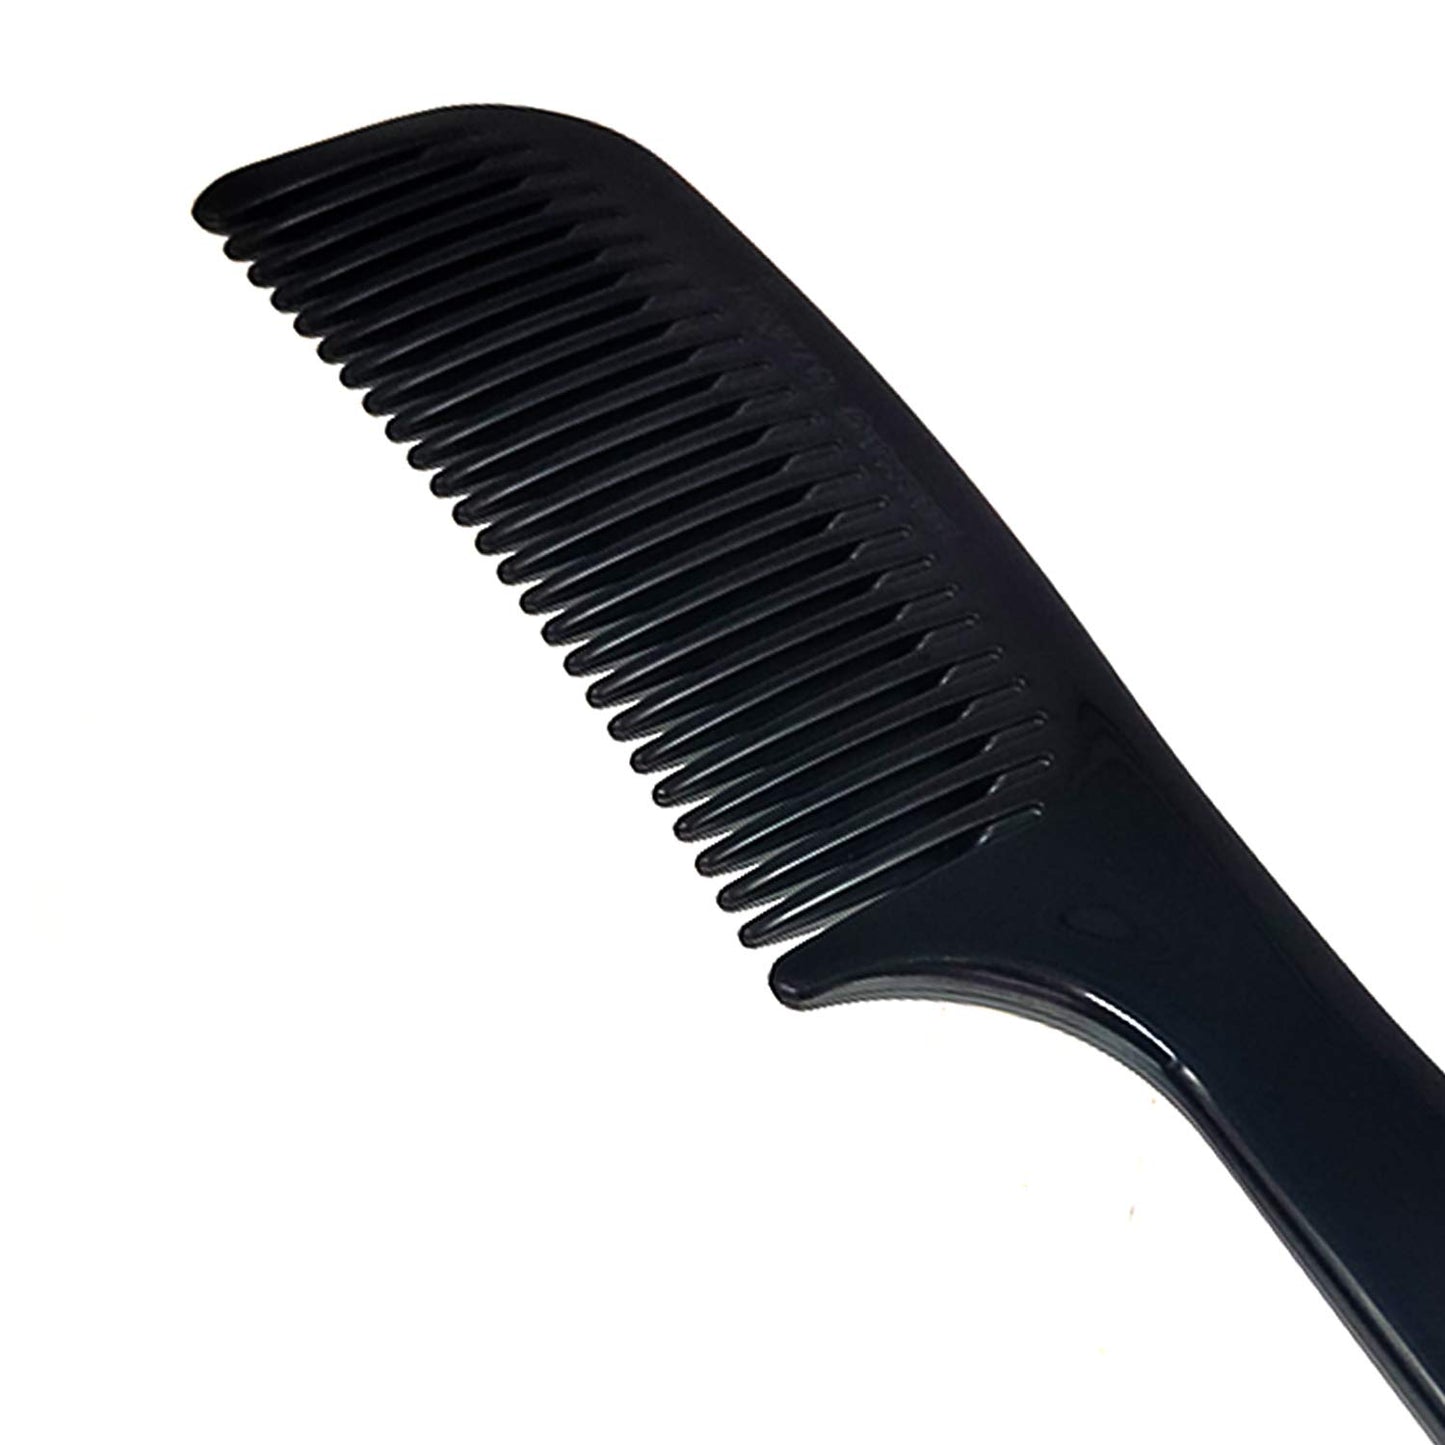 Denman D22 Grooming Comb 寬齒梳